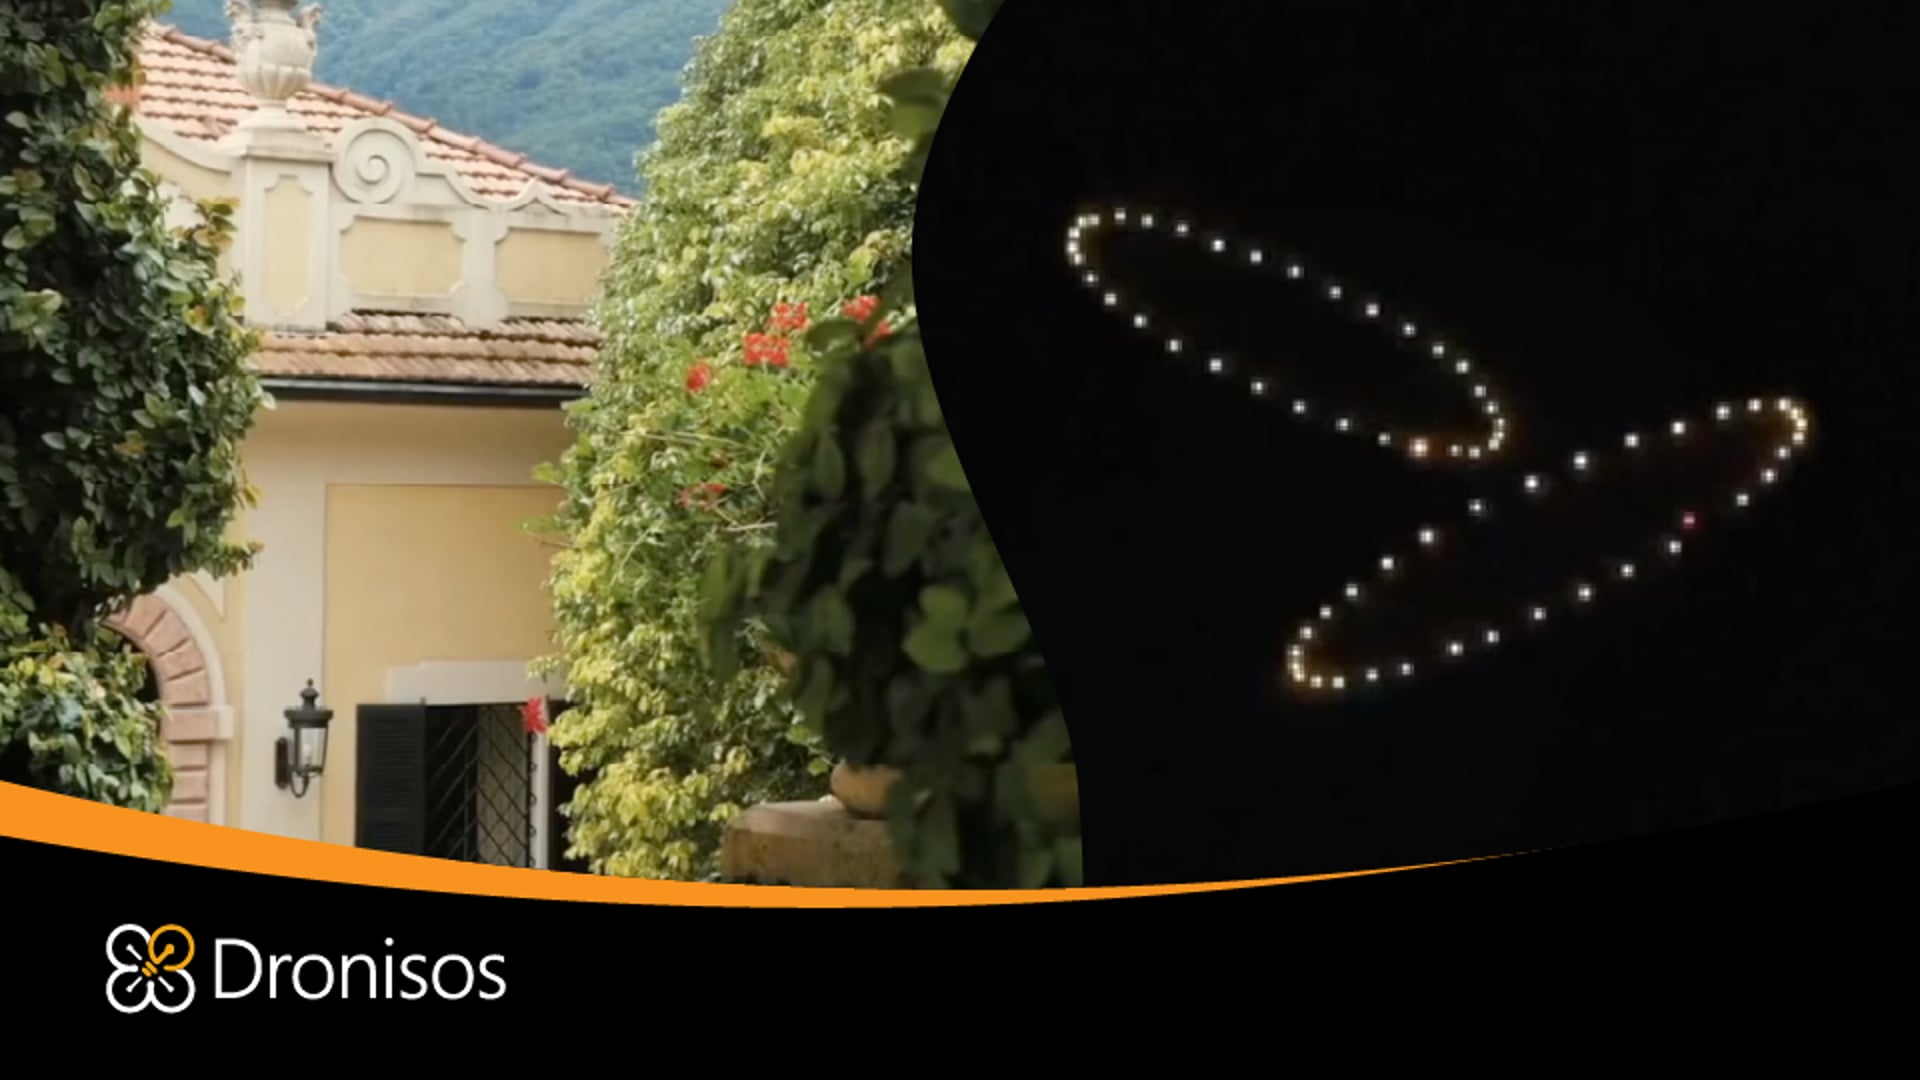 Drone show for a wedding at Villa Balbianello, Lake Como, Italy